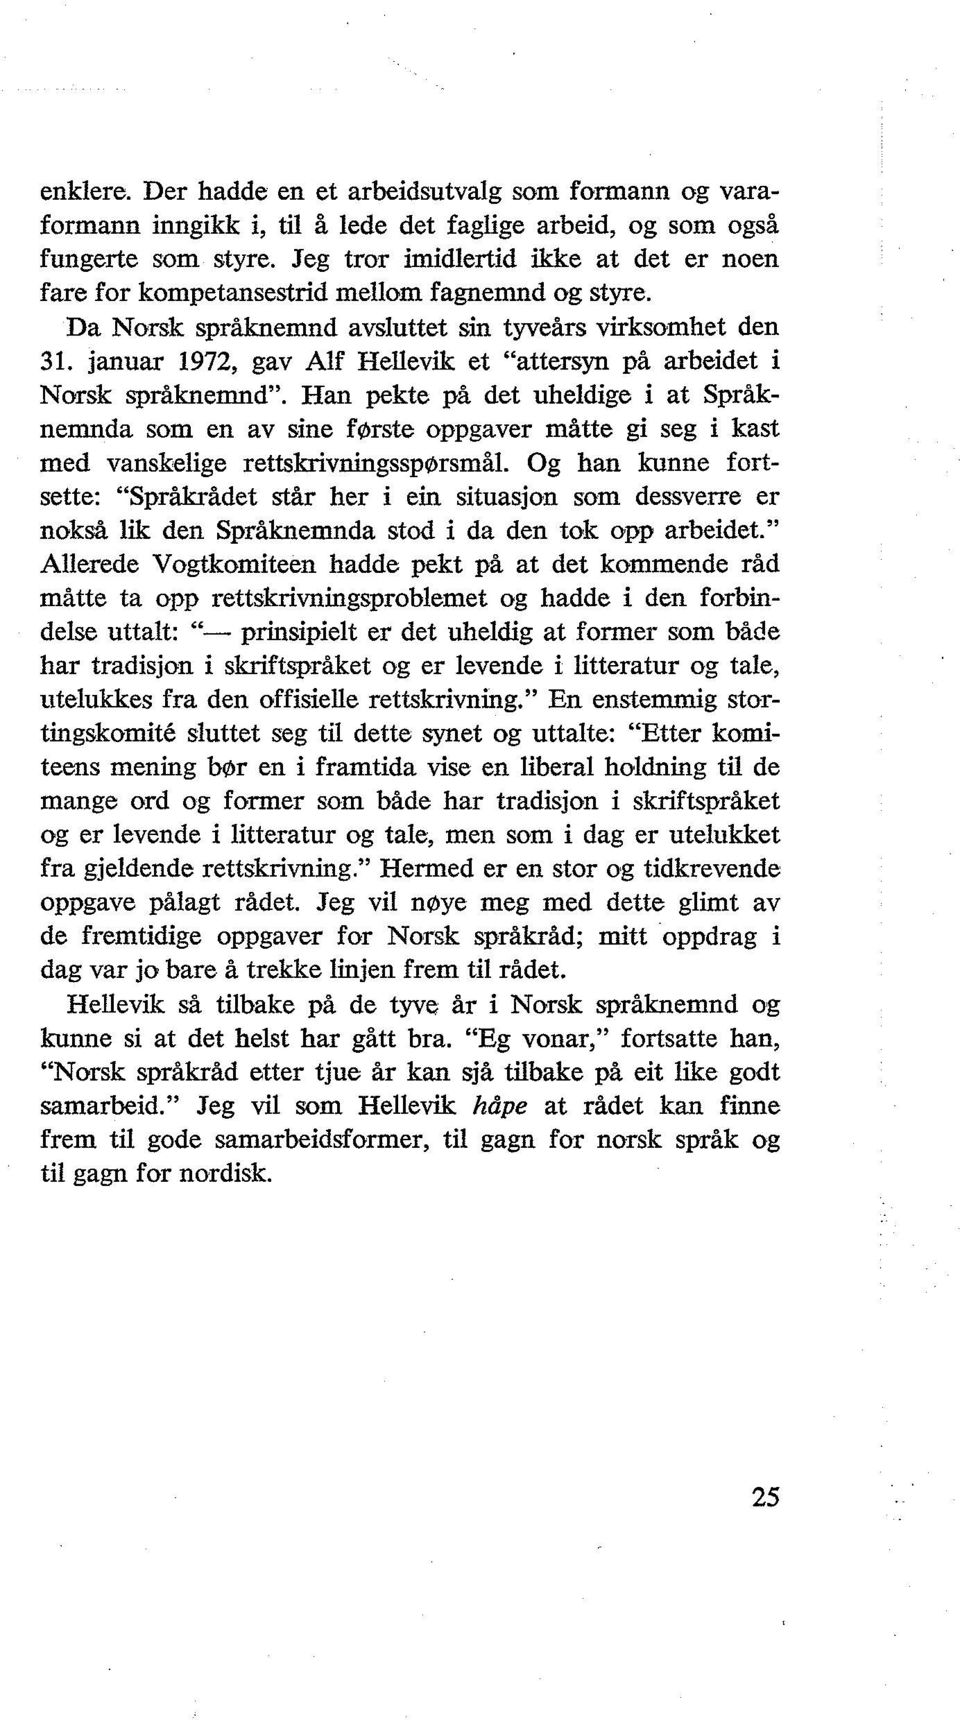 januar 1972, gav Alf Hellevik et "attersyn på arbeidet i Norsk språknemnd".